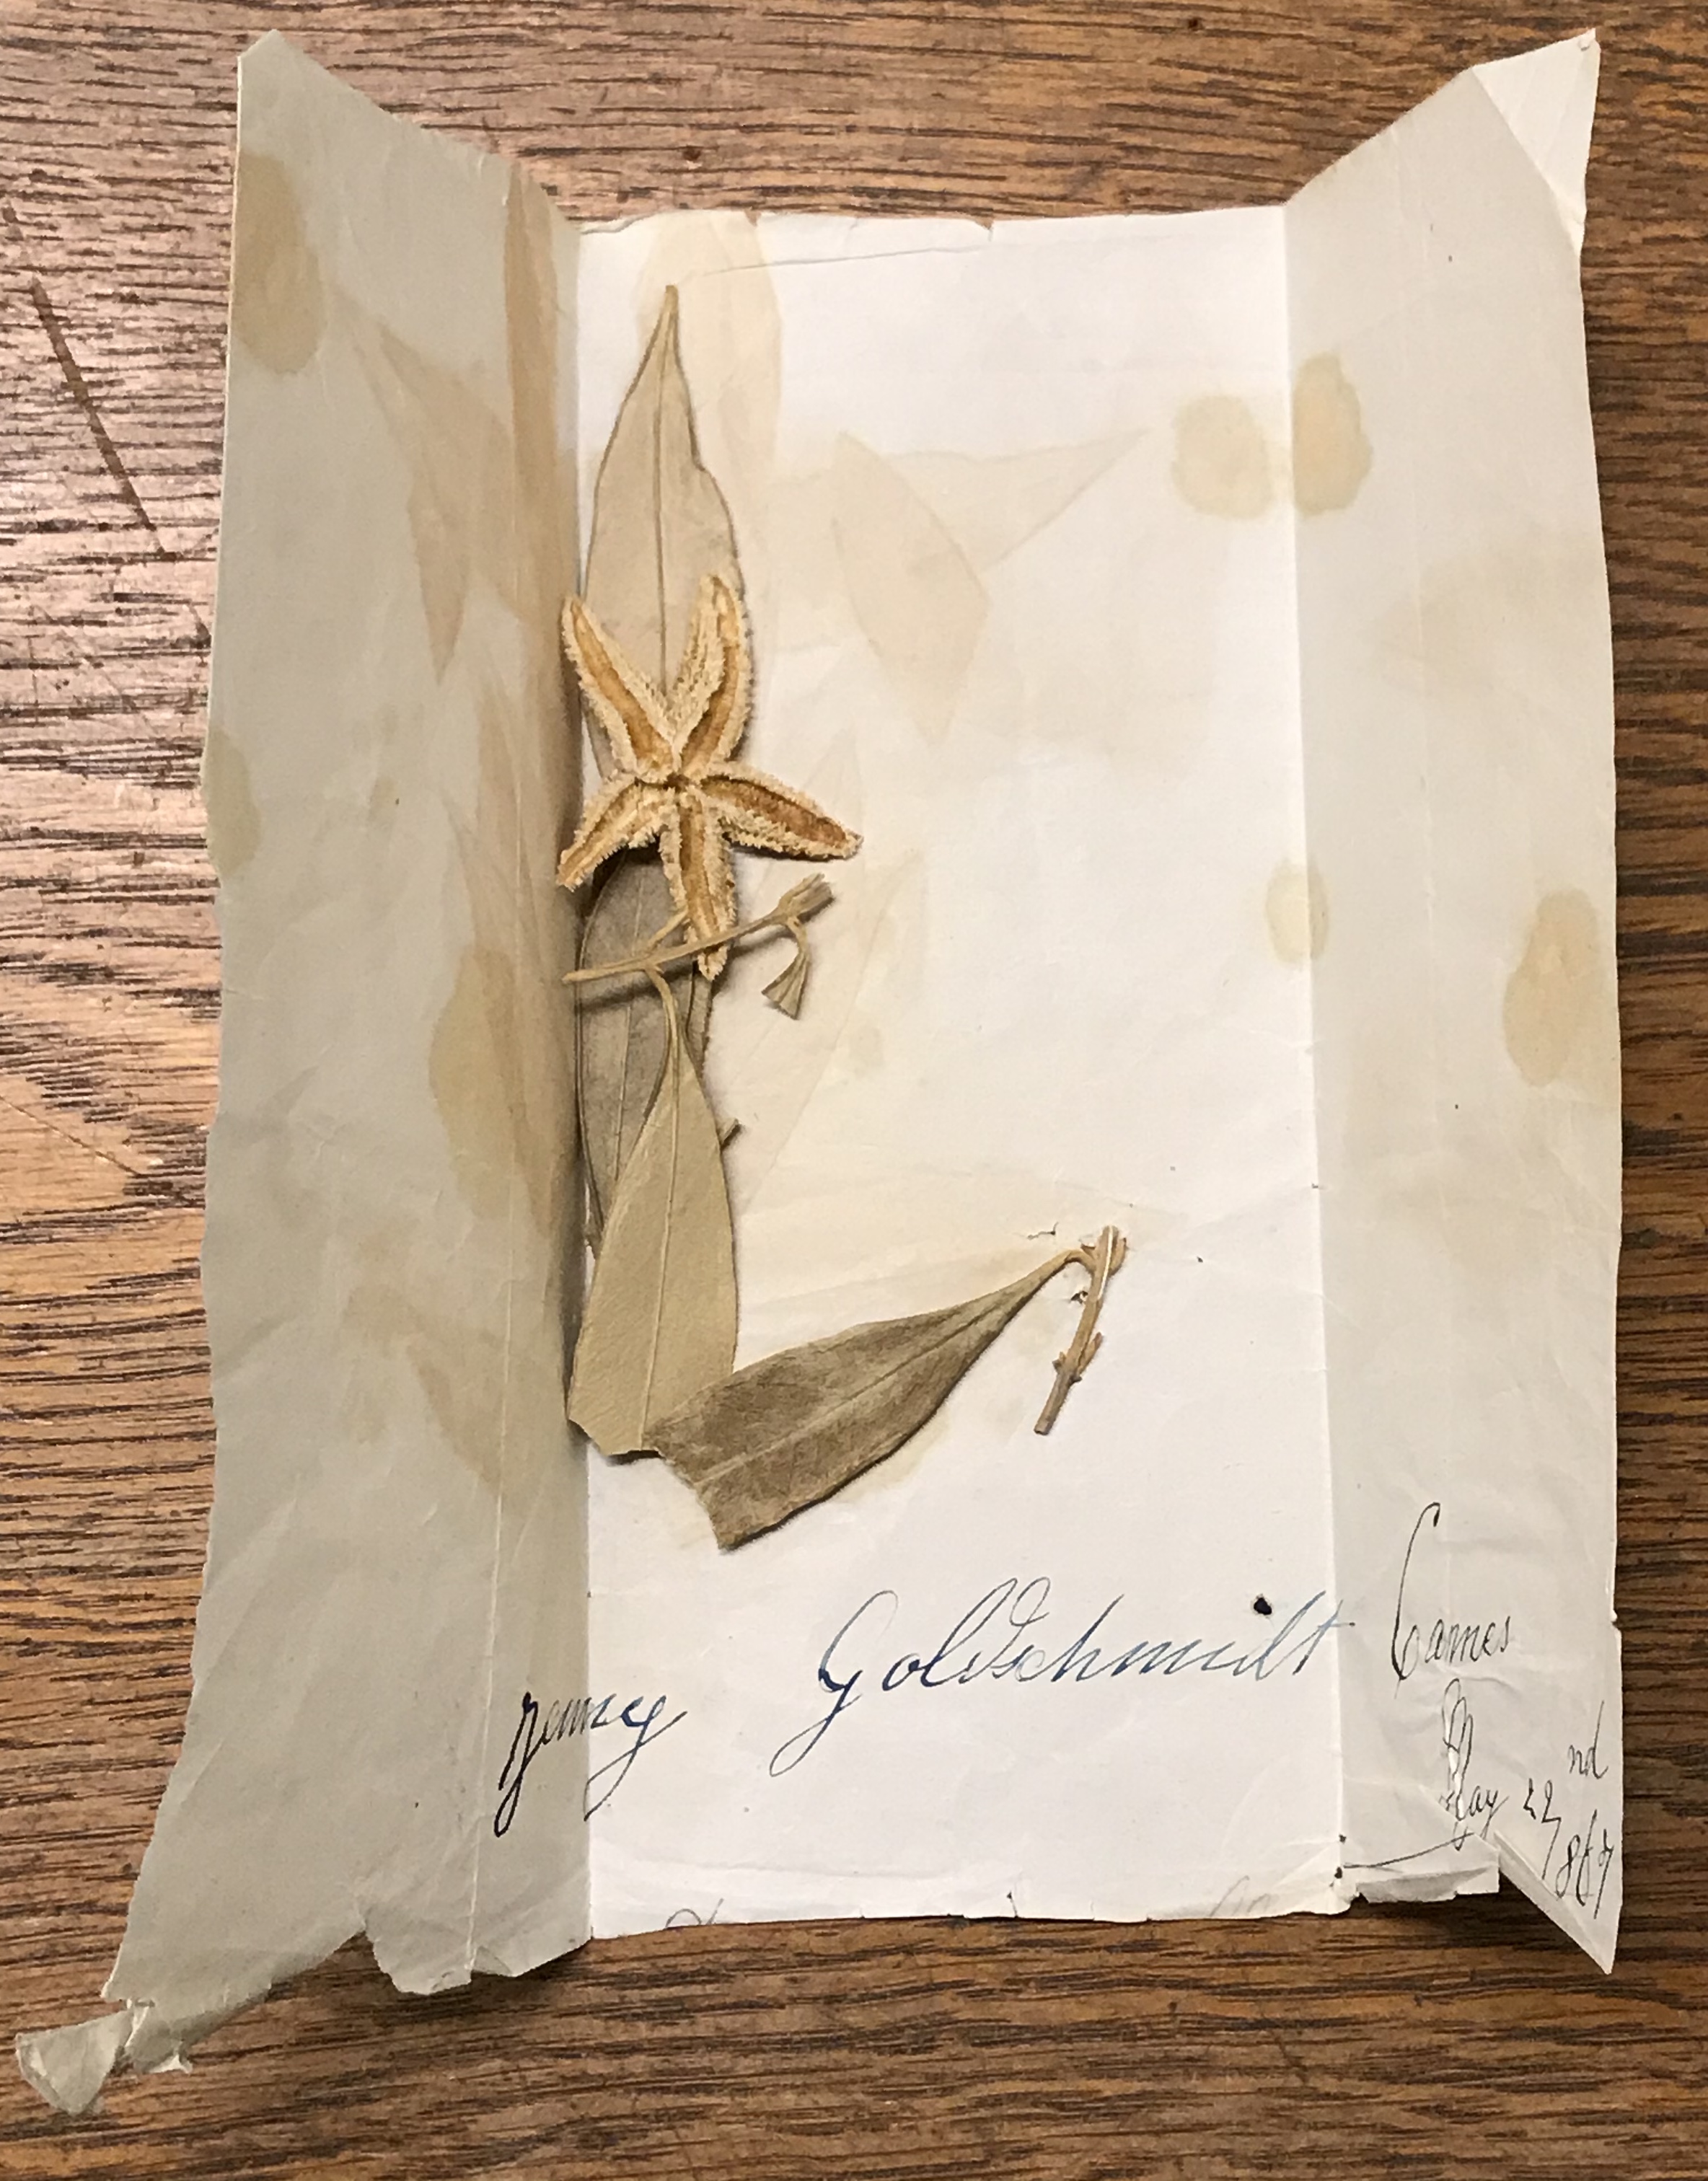 I ett uppvikt papper ligger torkade blad och en blomma. På pappret står med blått bläck: Jenny Goldschmidt